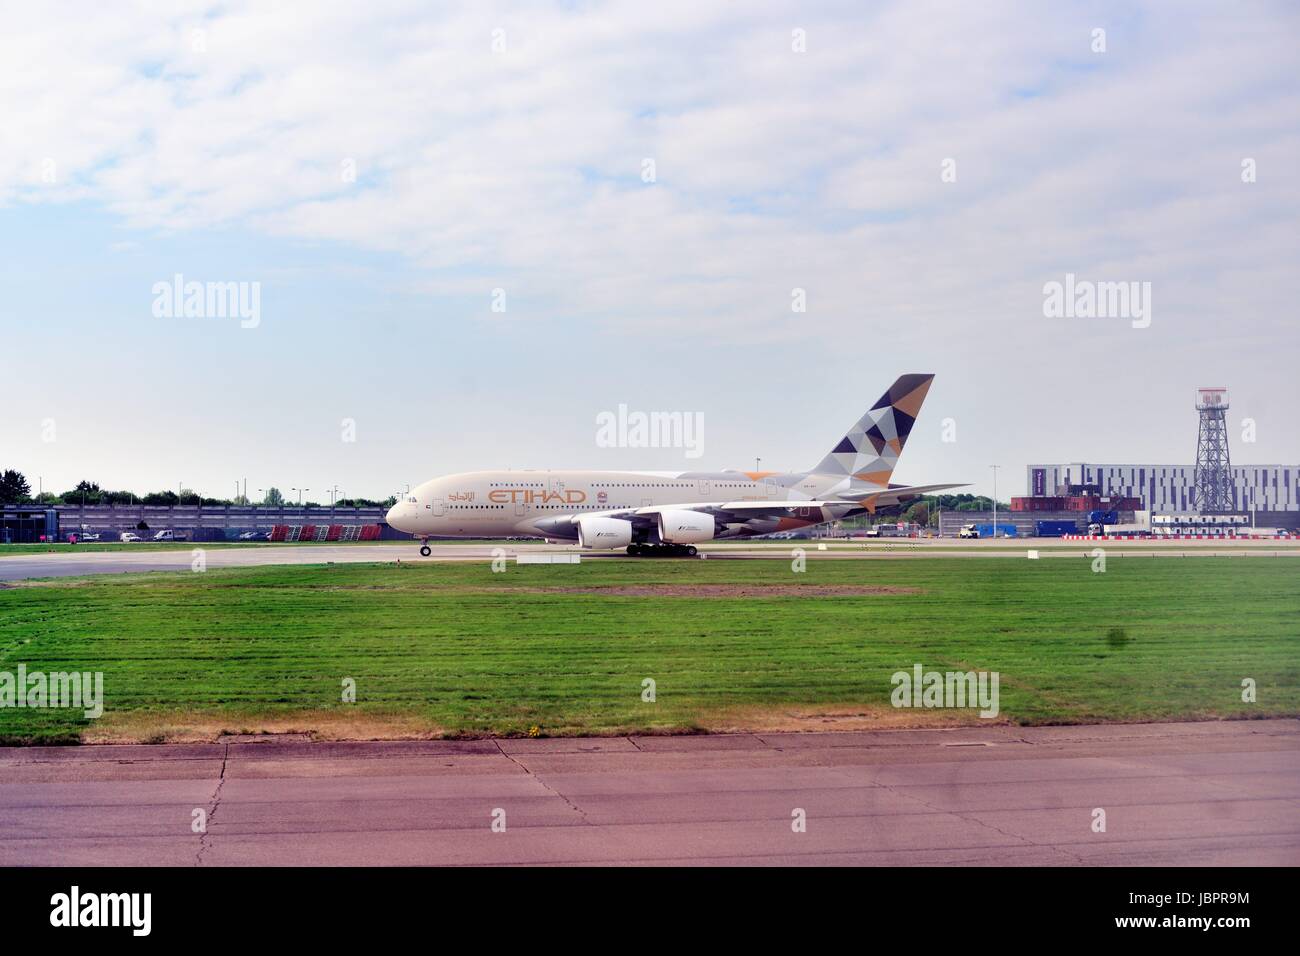 Un Etihad Airways jet despegando en el aeropuerto internacional de Heathrow de Londres, uno de los aeropuertos más activos del mundo. Londres, Inglaterra. Foto de stock